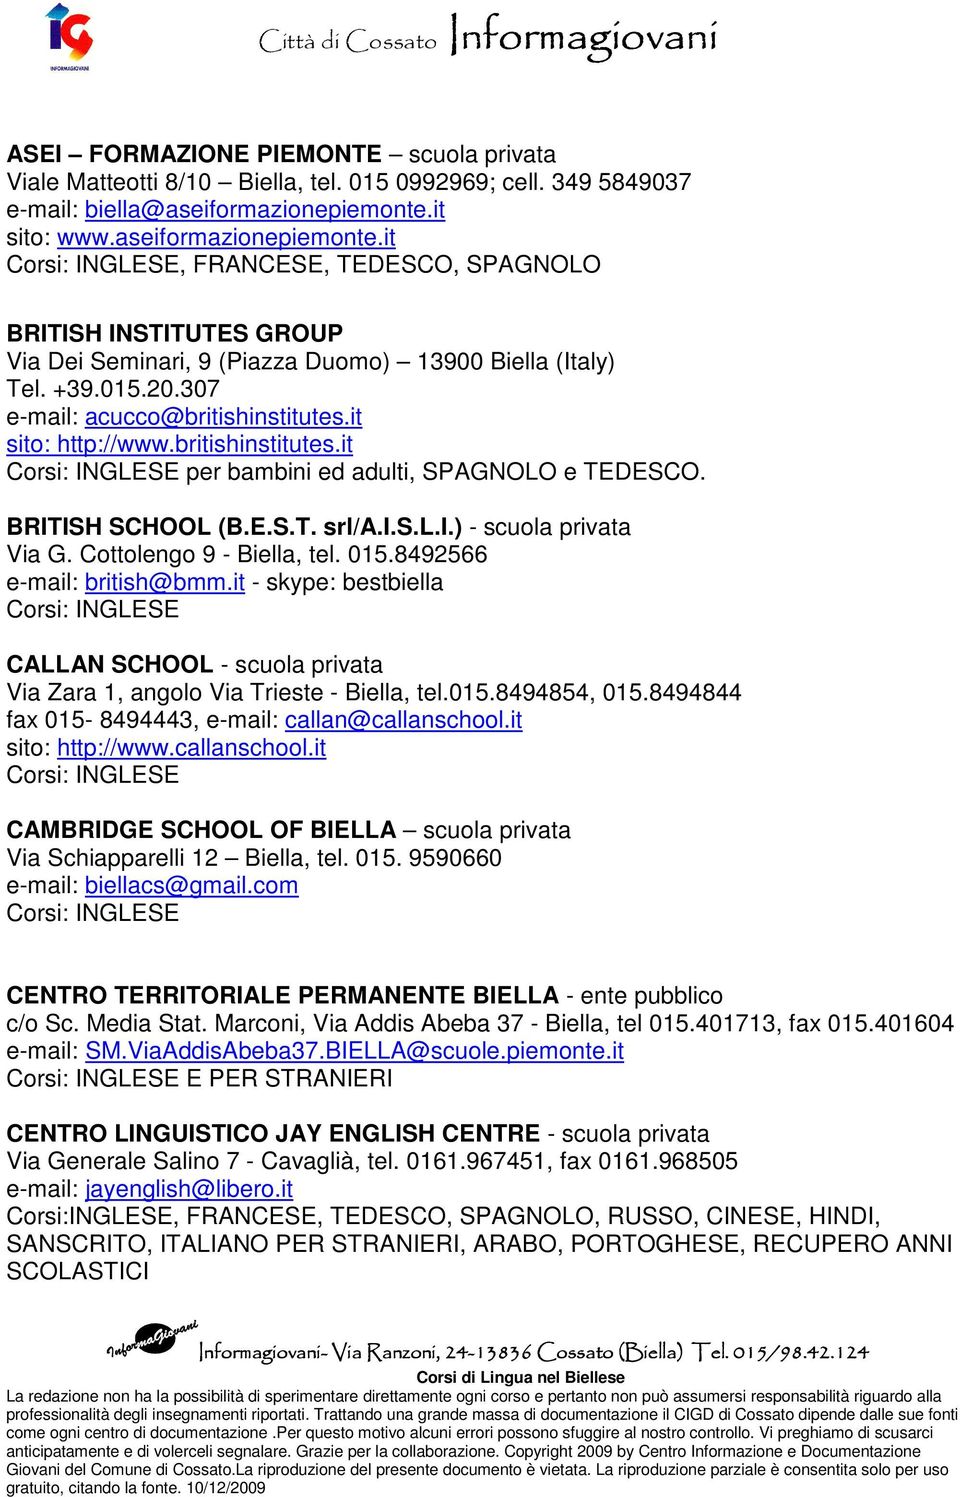 307 e-mail: acucco@britishinstitutes.it sito: http://www.britishinstitutes.it per bambini ed adulti, SPAGNOLO e TEDESCO. BRITISH SCHOOL (B.E.S.T. srl/a.i.s.l.i.) - scuola privata Via G.